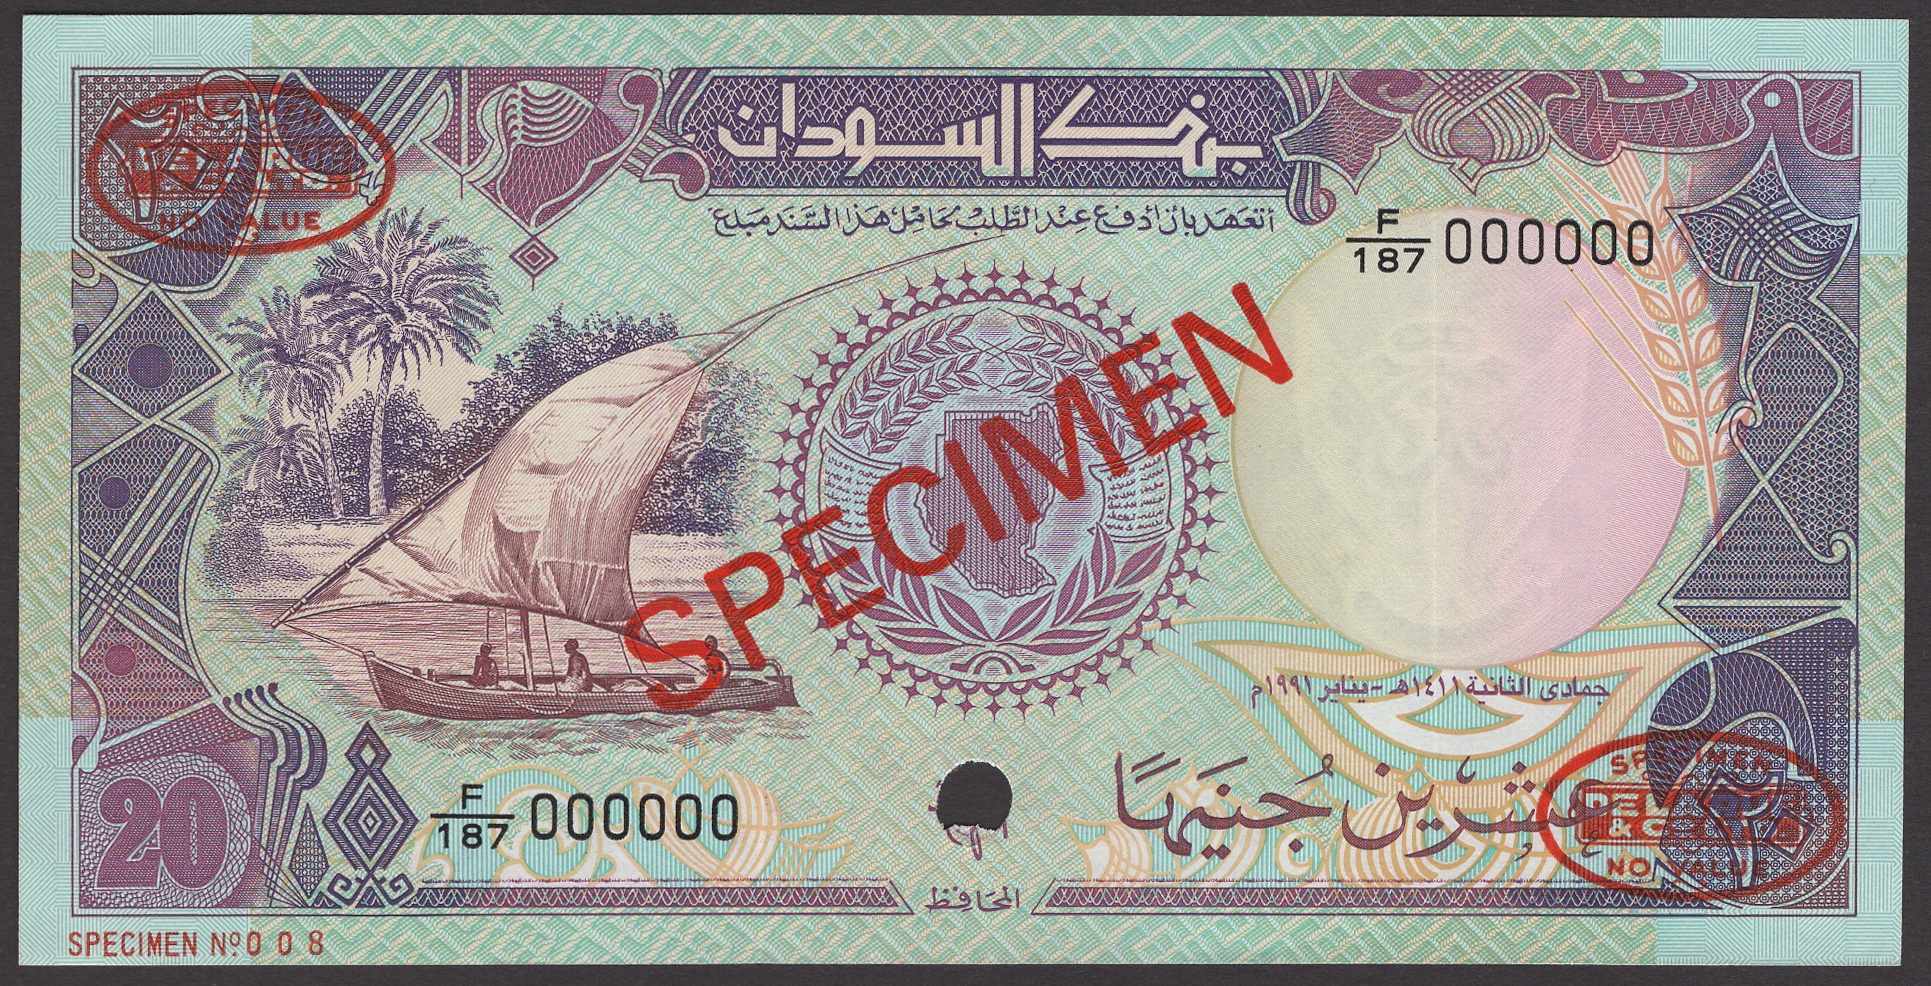 Bank of Sudan, specimen 25 Piastres, 1991, serial number F/187 000000, red SPECIMEN...